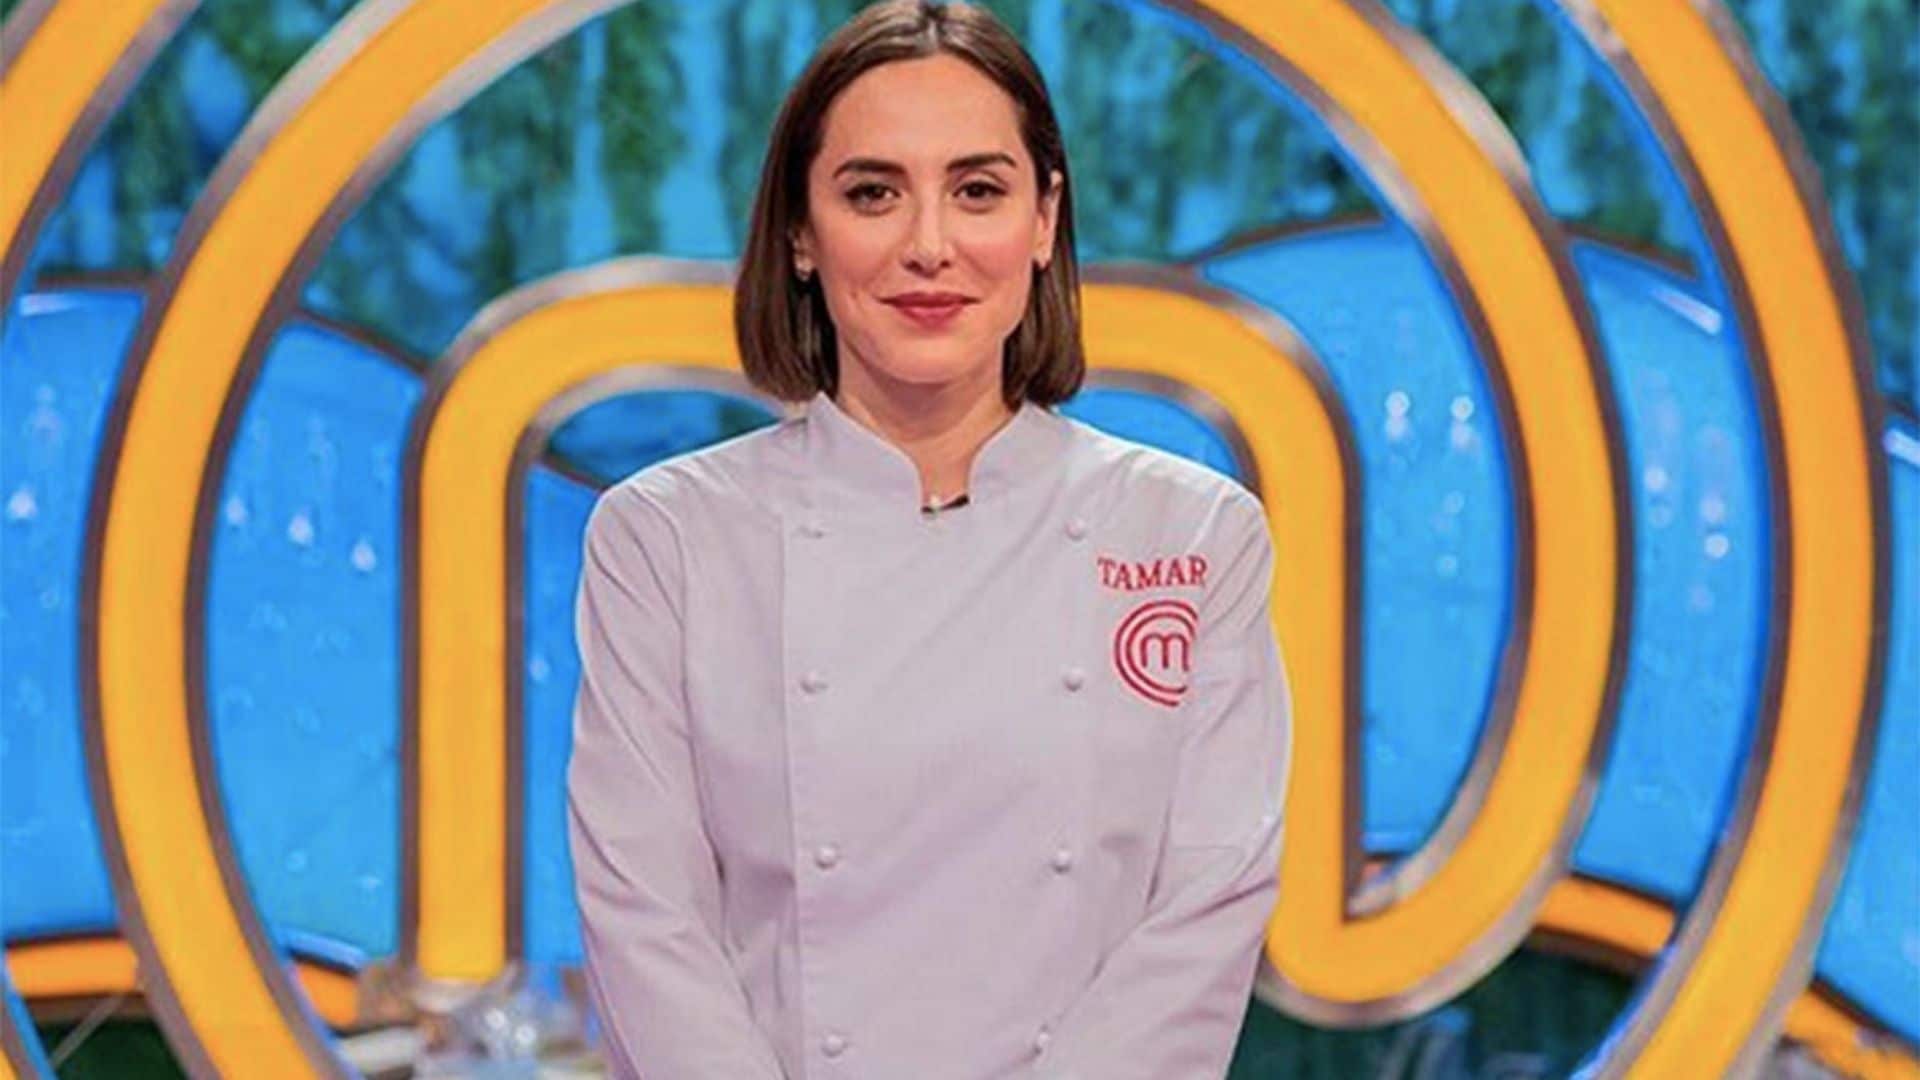 Tamara Falcó, la flamante ganadora de 'MasterChef Celebrity' regresa al plató